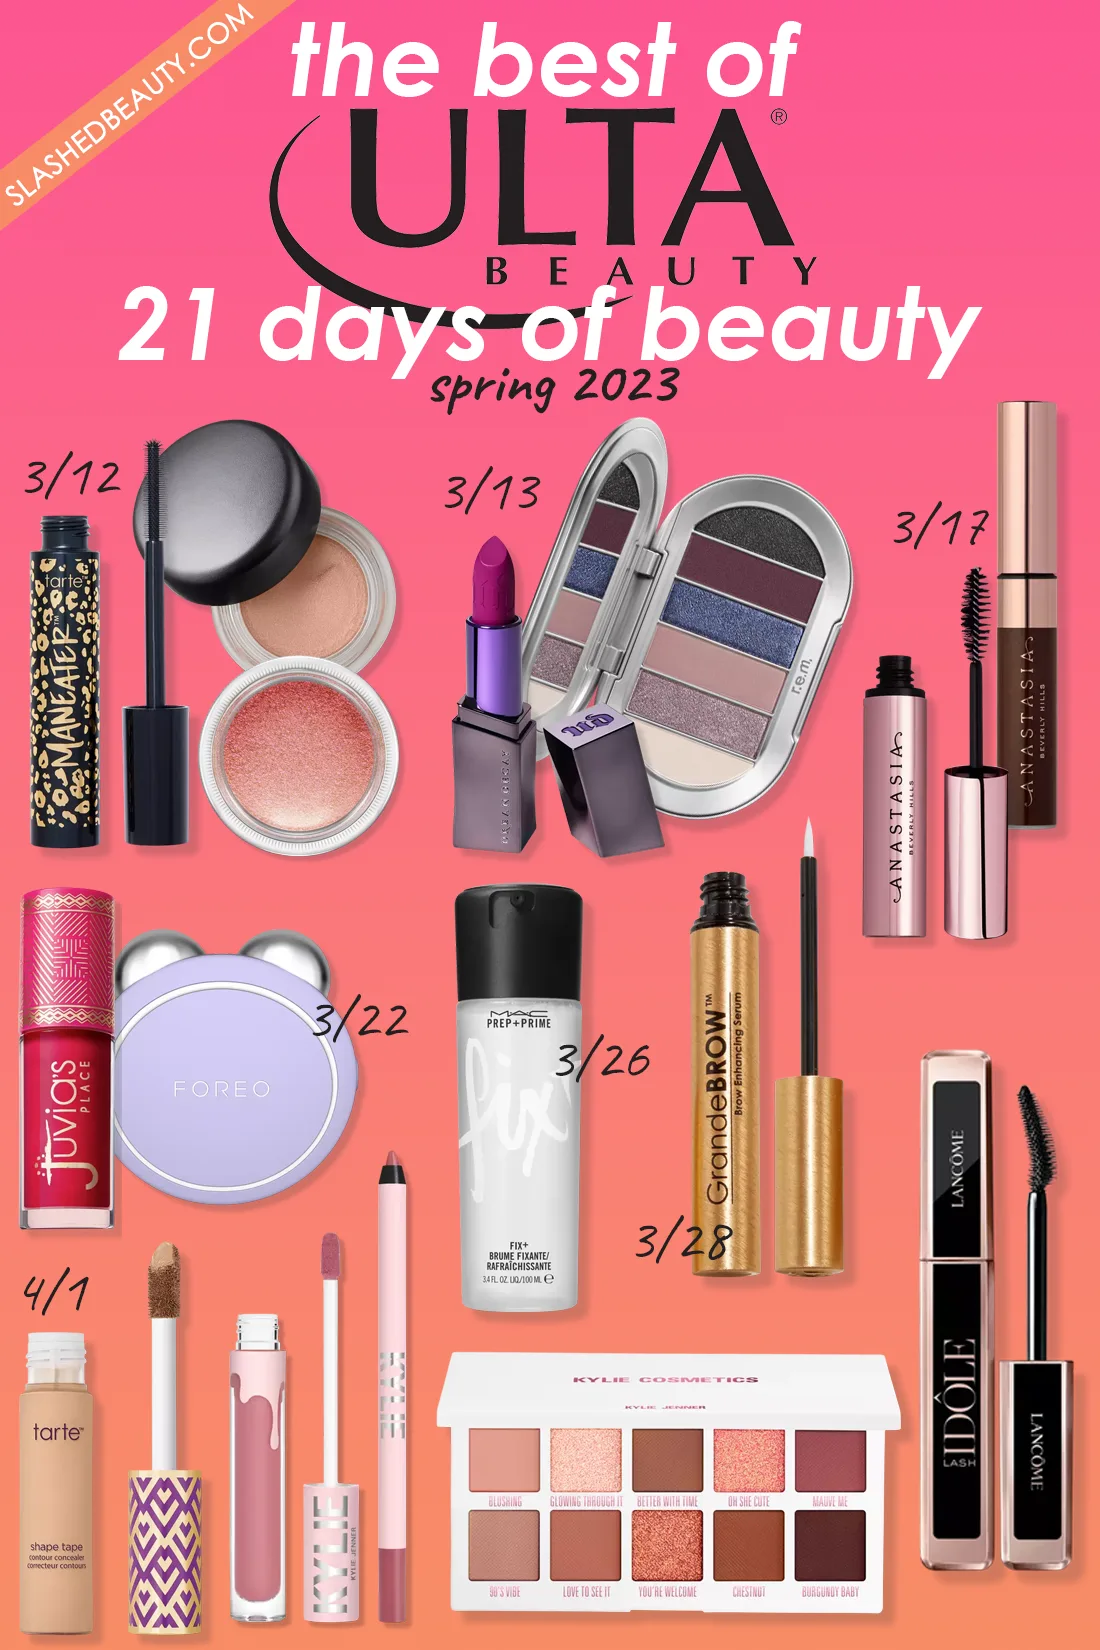 کلاژ آرایش در فروش در طول فروش Ulta Beauty 21 Days of Beauty بهار 2023 |  The Best of Ulta Beauty 21 Days of Beauty فروش بهار 2023 |  زیبایی بریده بریده